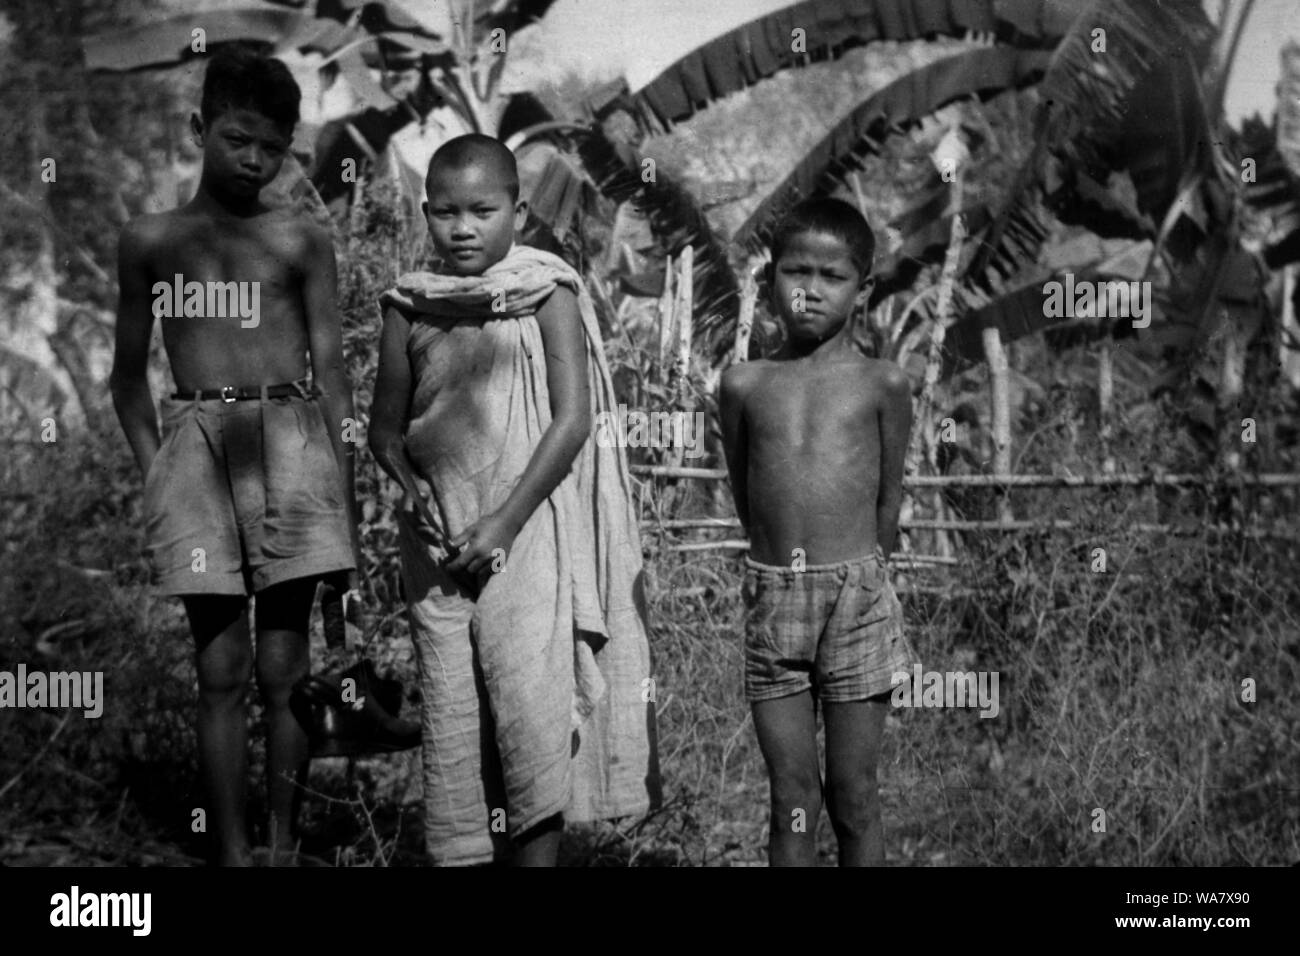 AJAXNETPHOTO. 1953-1957 (circa). INDO CINA. Il Vietnam. (IN POSIZIONE paese sconosciuto.) - tre ragazzi giovani, uno (al centro) con testa rasata indossare accappatoio buddista, in un paesaggio di piantagione. foto:JEAN CORRÈZE/AJAXREF:RX7 191508 240 Foto Stock